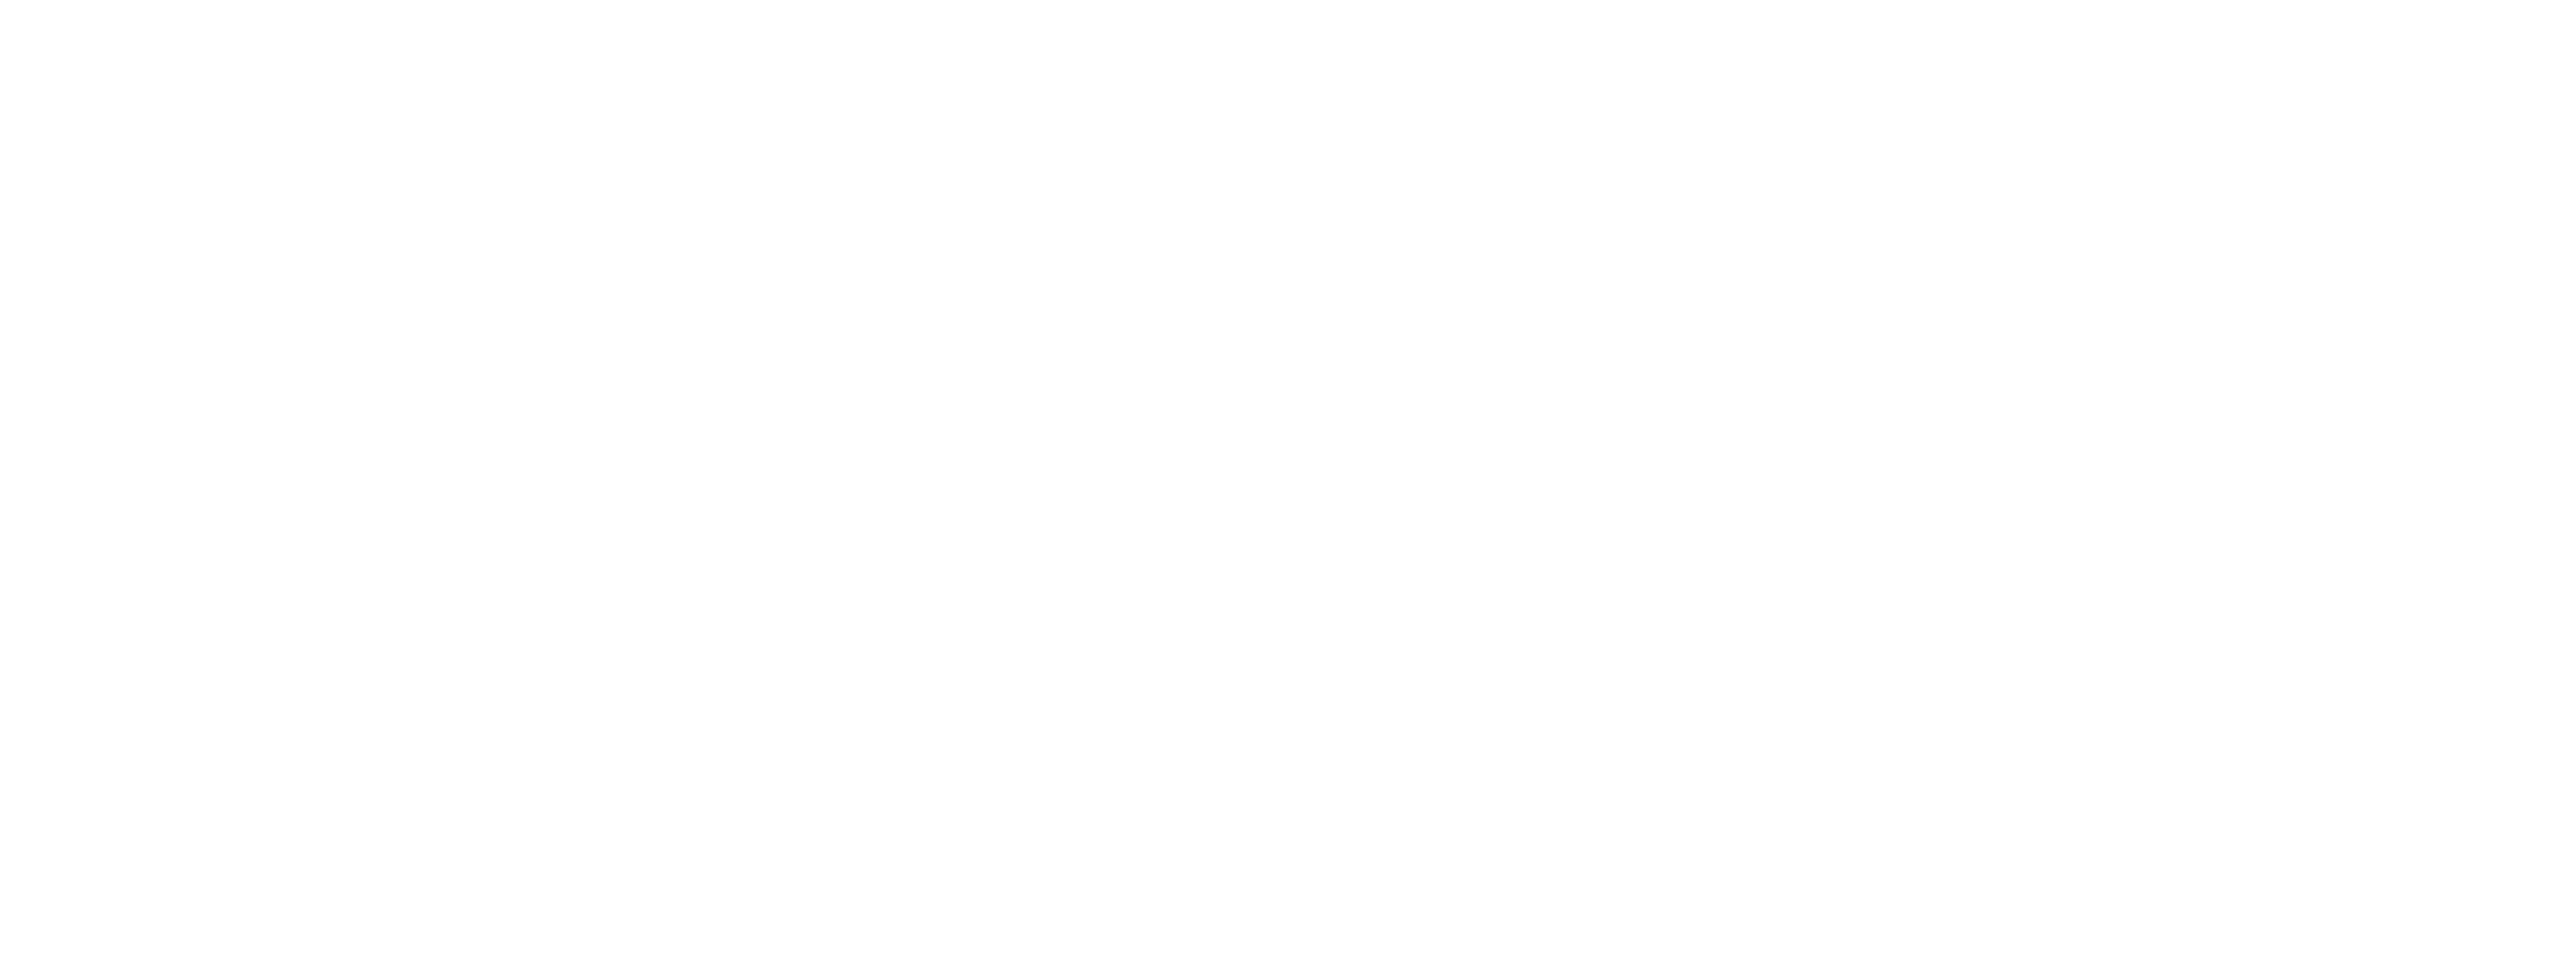 Perpetual Logo